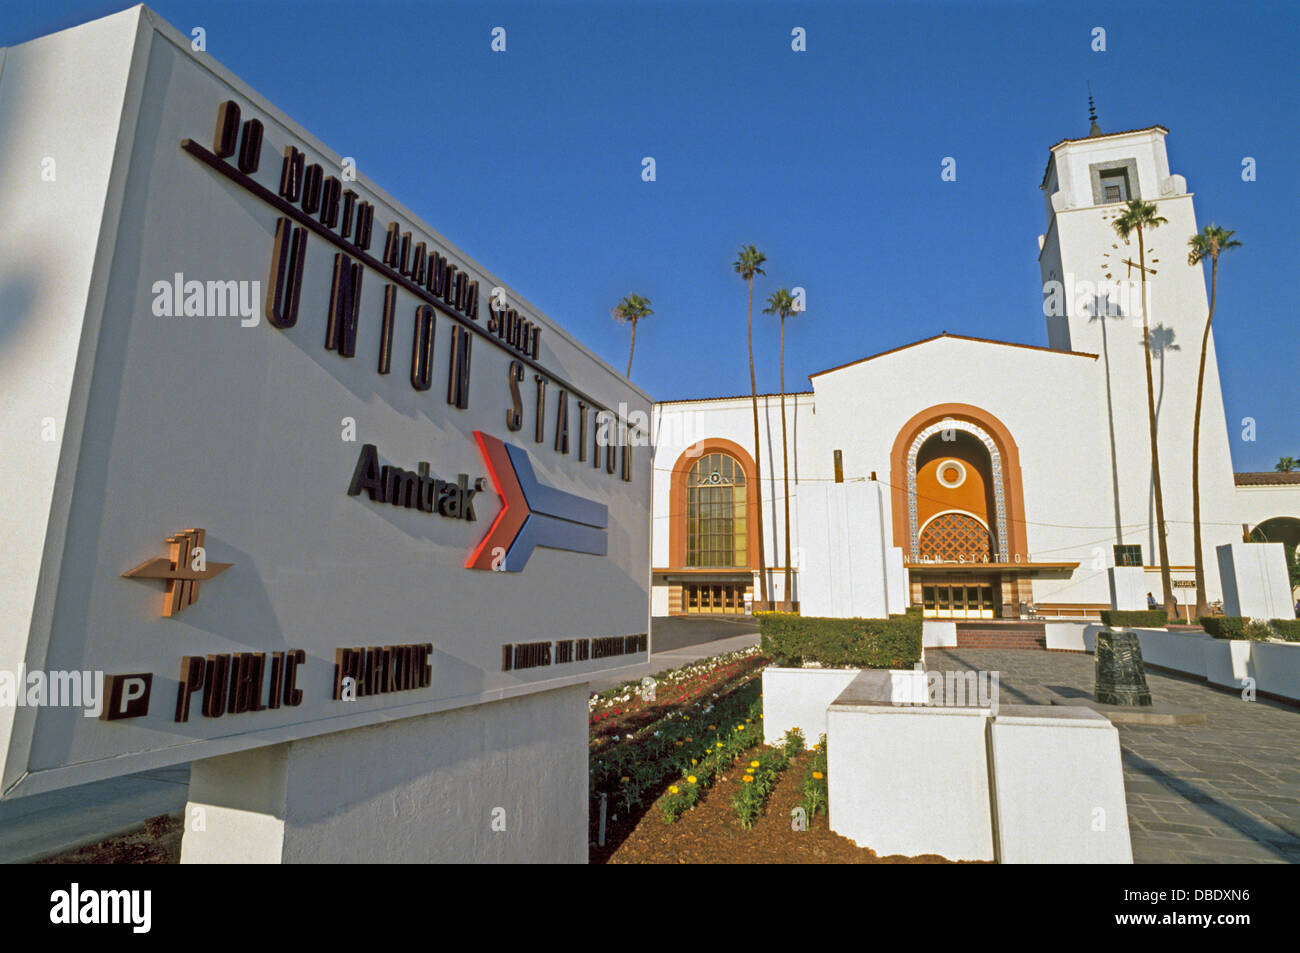 La gare Union de Los Angeles a ouvert ses portes en 1939 et sert maintenant plus de 60 000 passagers par jour sur l'ensemble du pays, de l'état et des trains locaux en Californie du Sud Banque D'Images